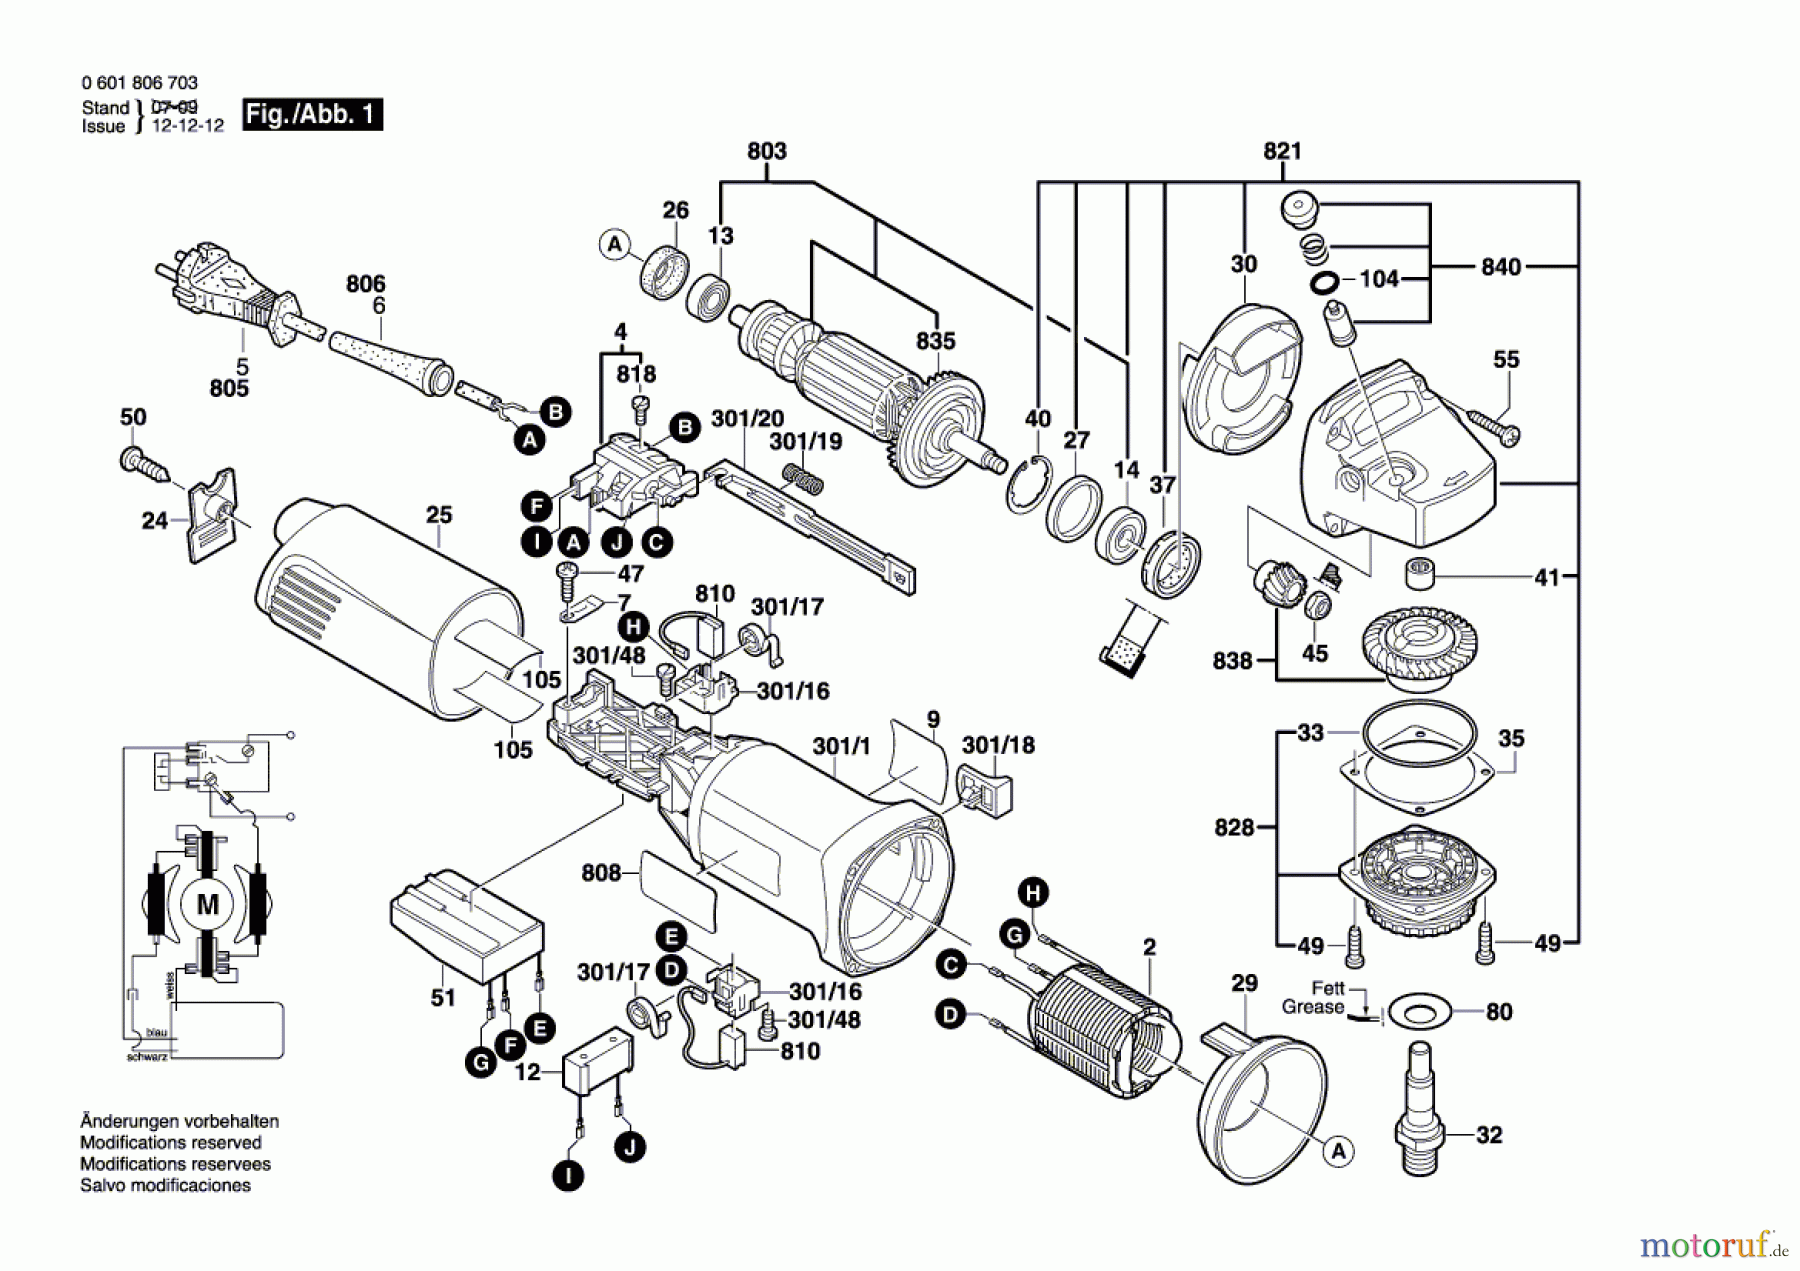  Bosch Werkzeug Winkelschleifer GWS 14-150C Seite 1